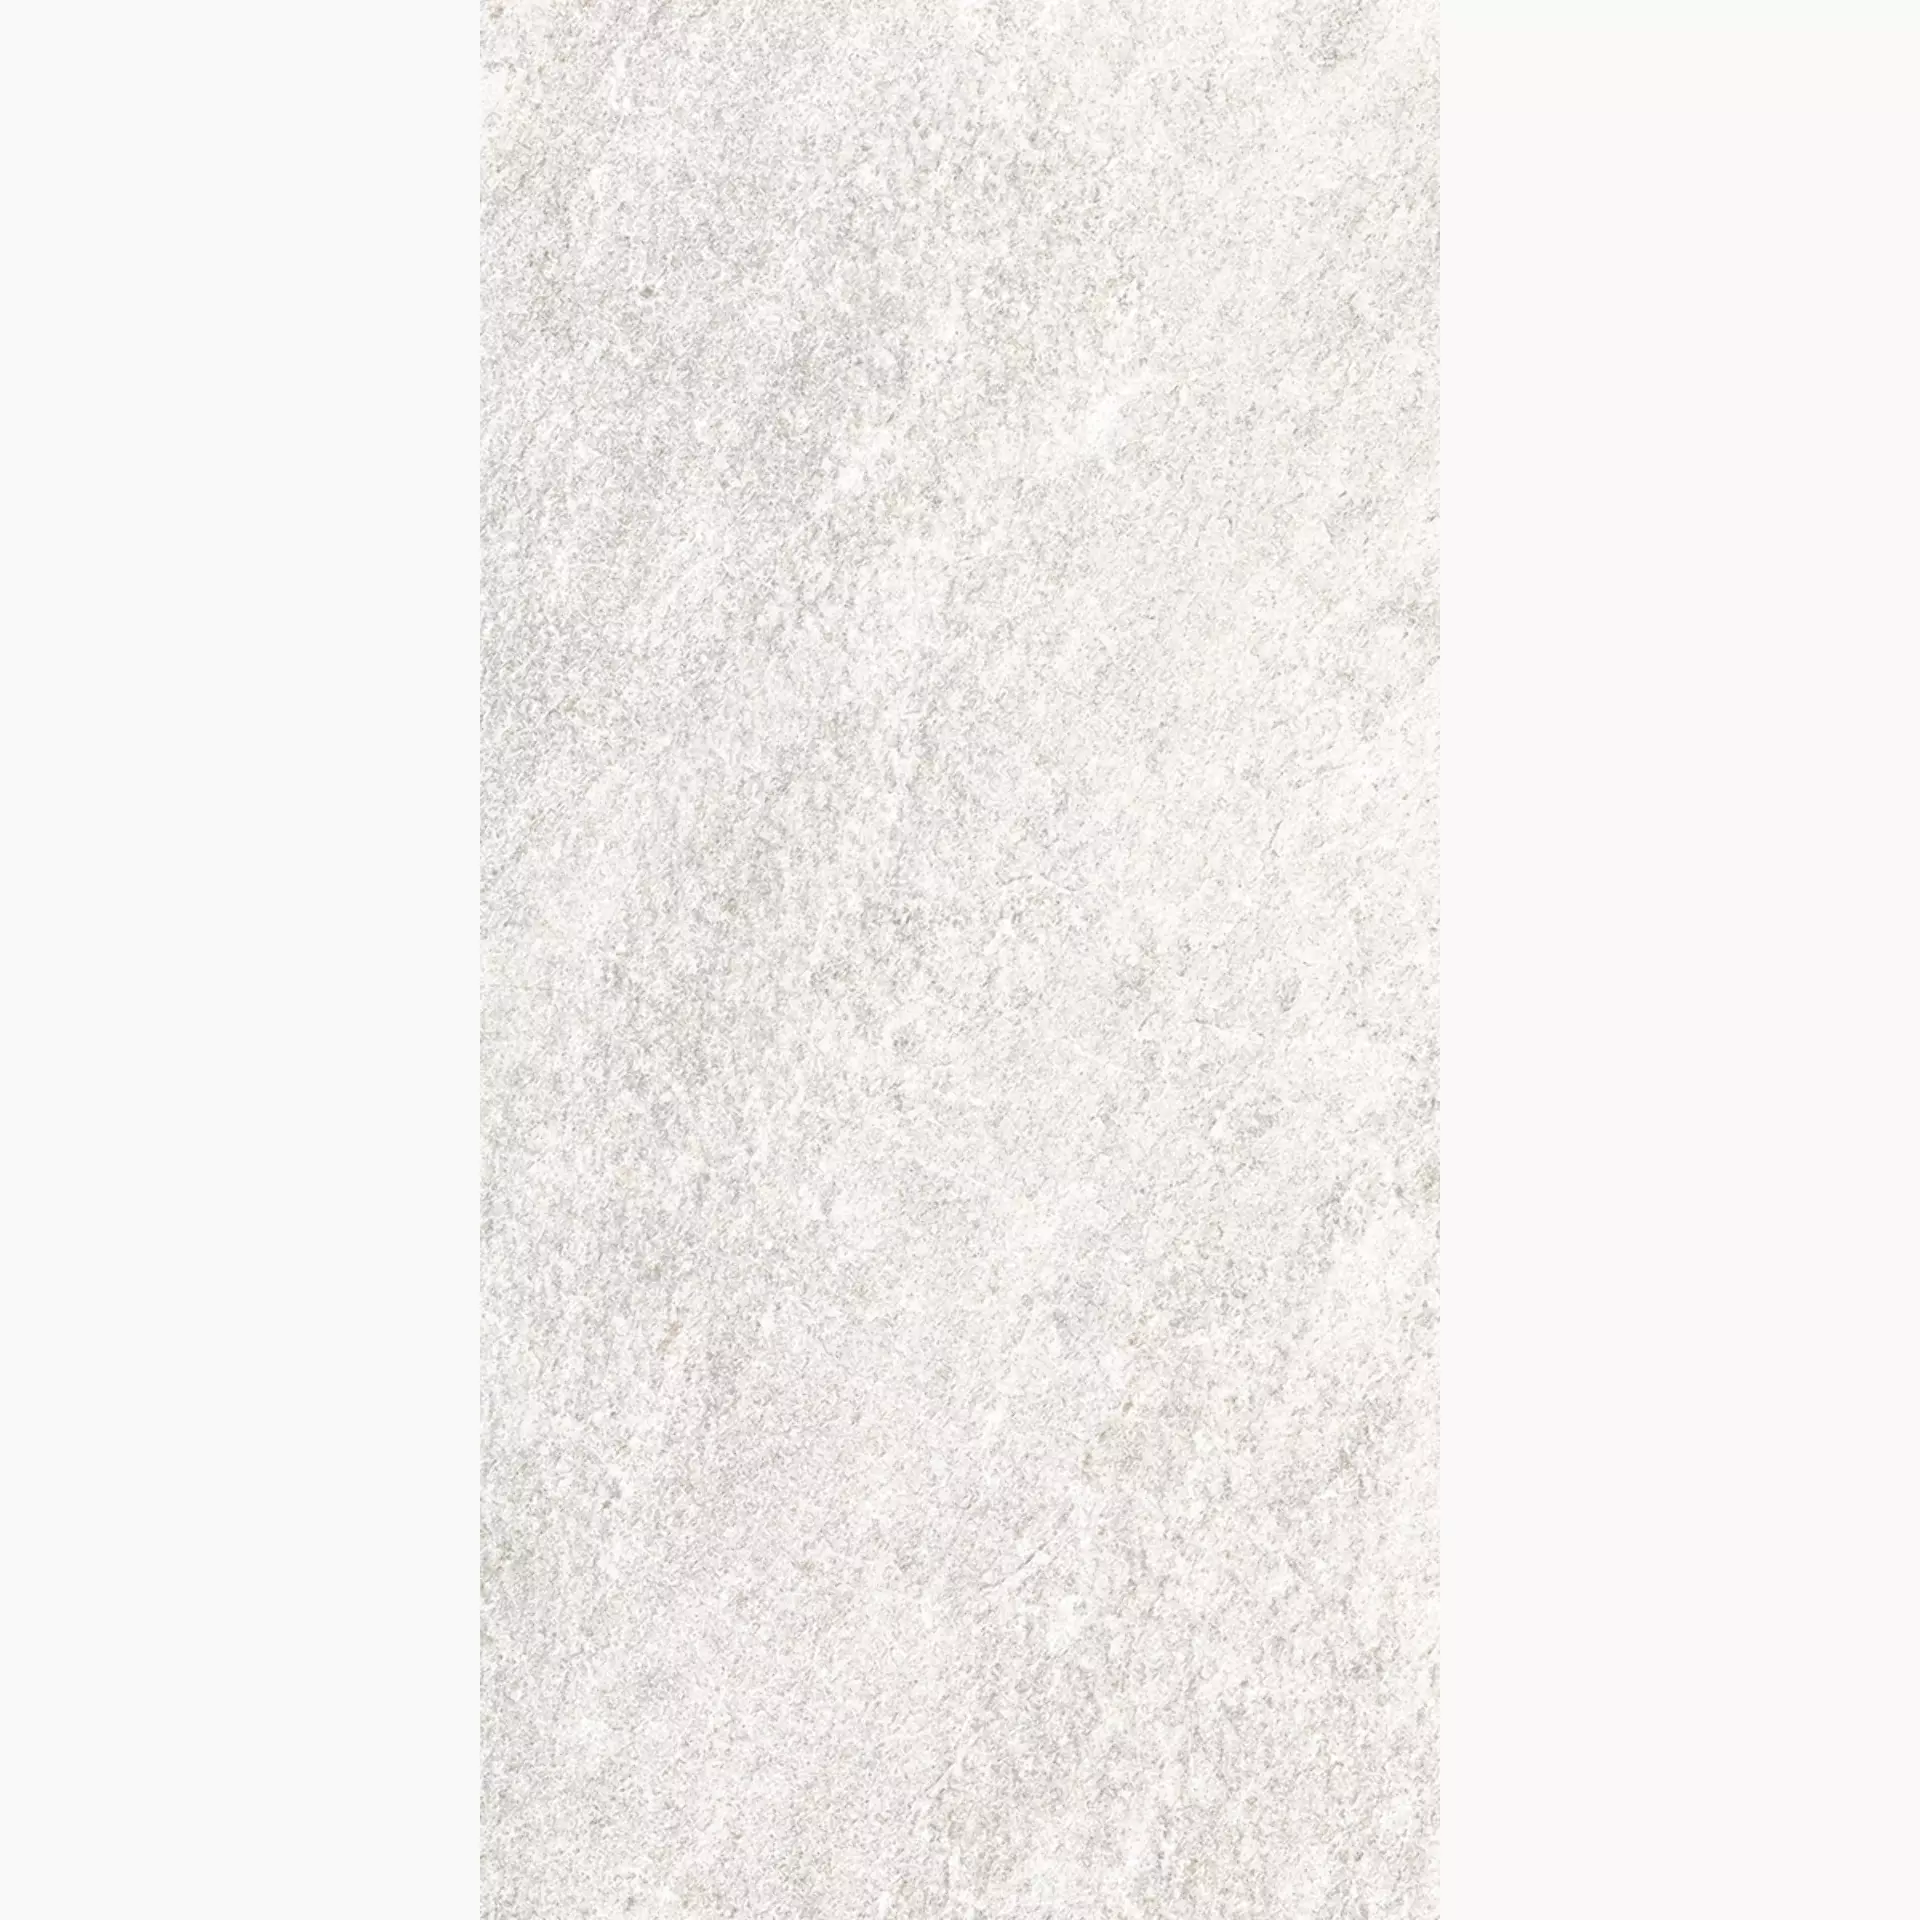 Rondine Quarzi White Naturale J87301 30x60cm rektifiziert 9,5mm